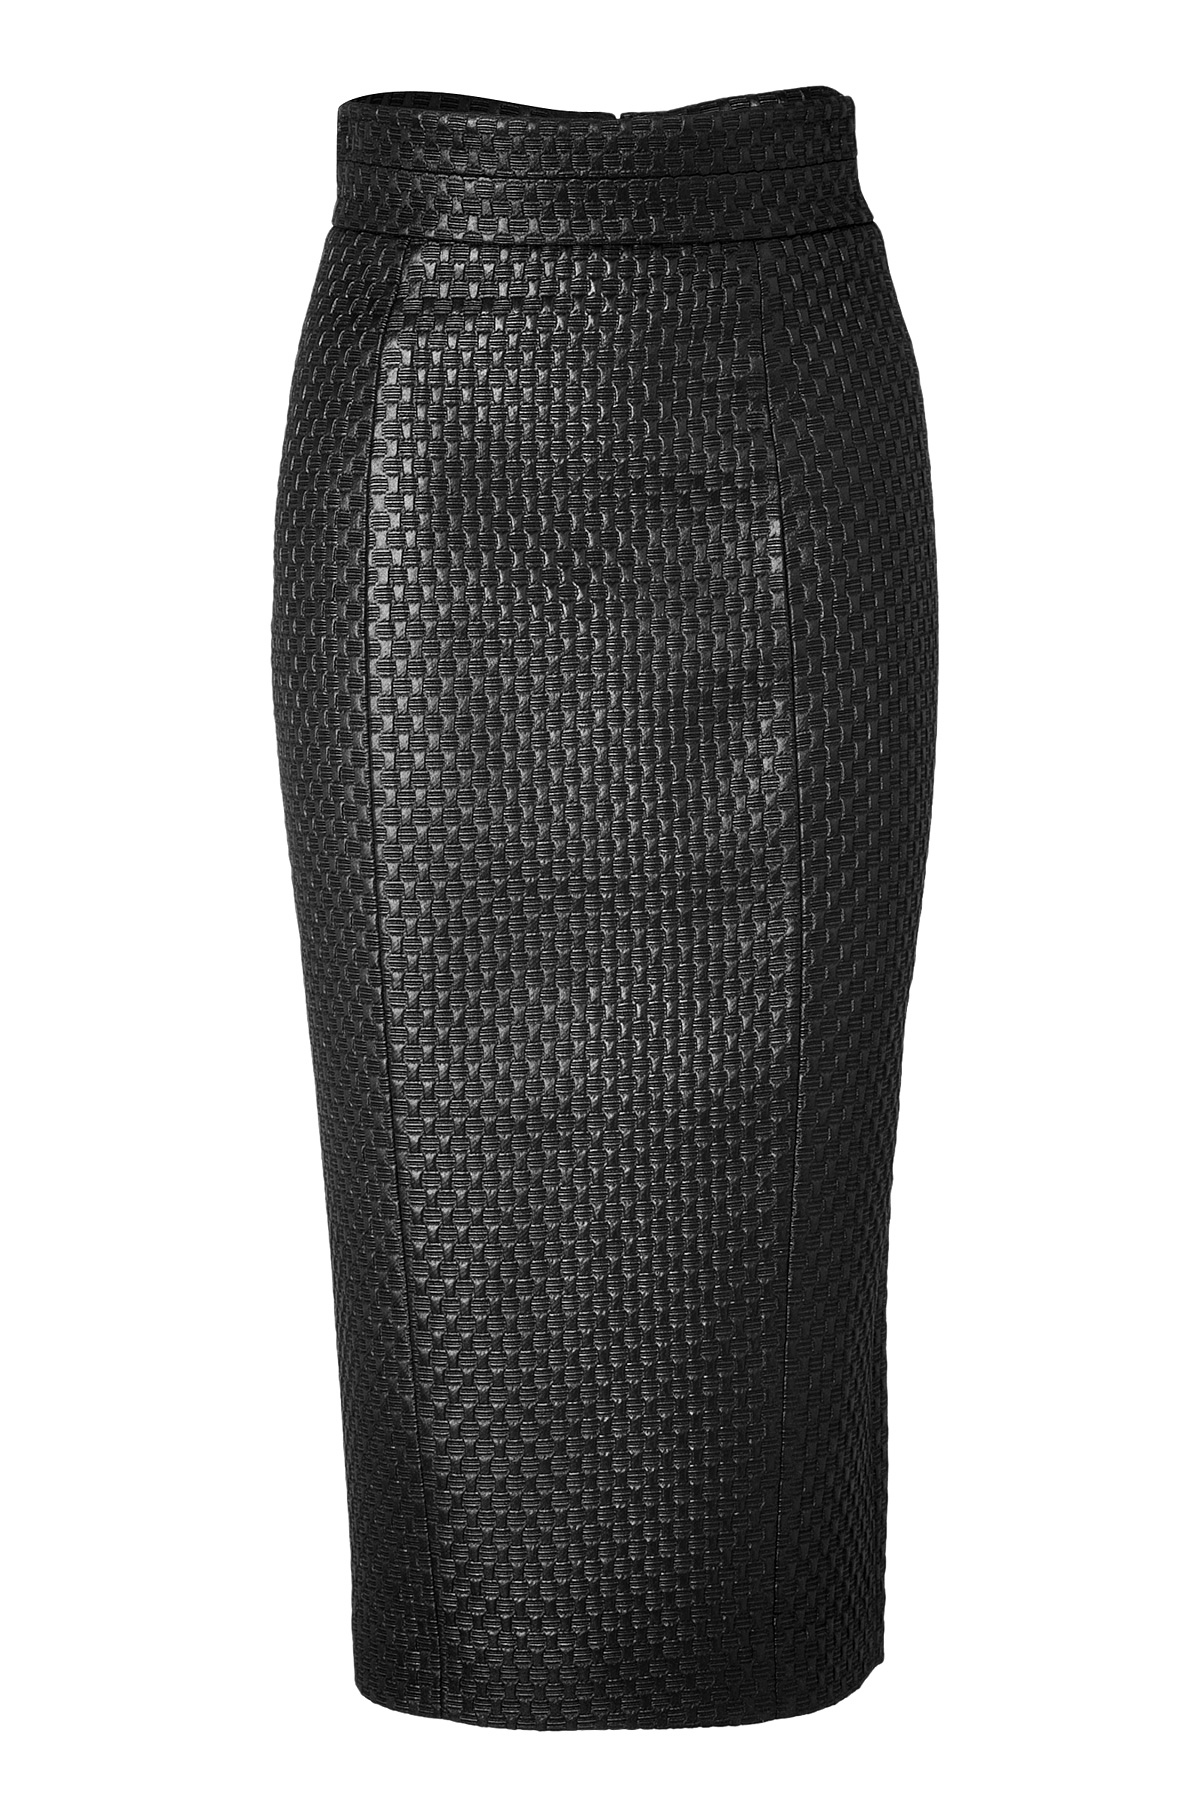 L'wren scott High Waisted Pencil Skirt in Black in Black | Lyst